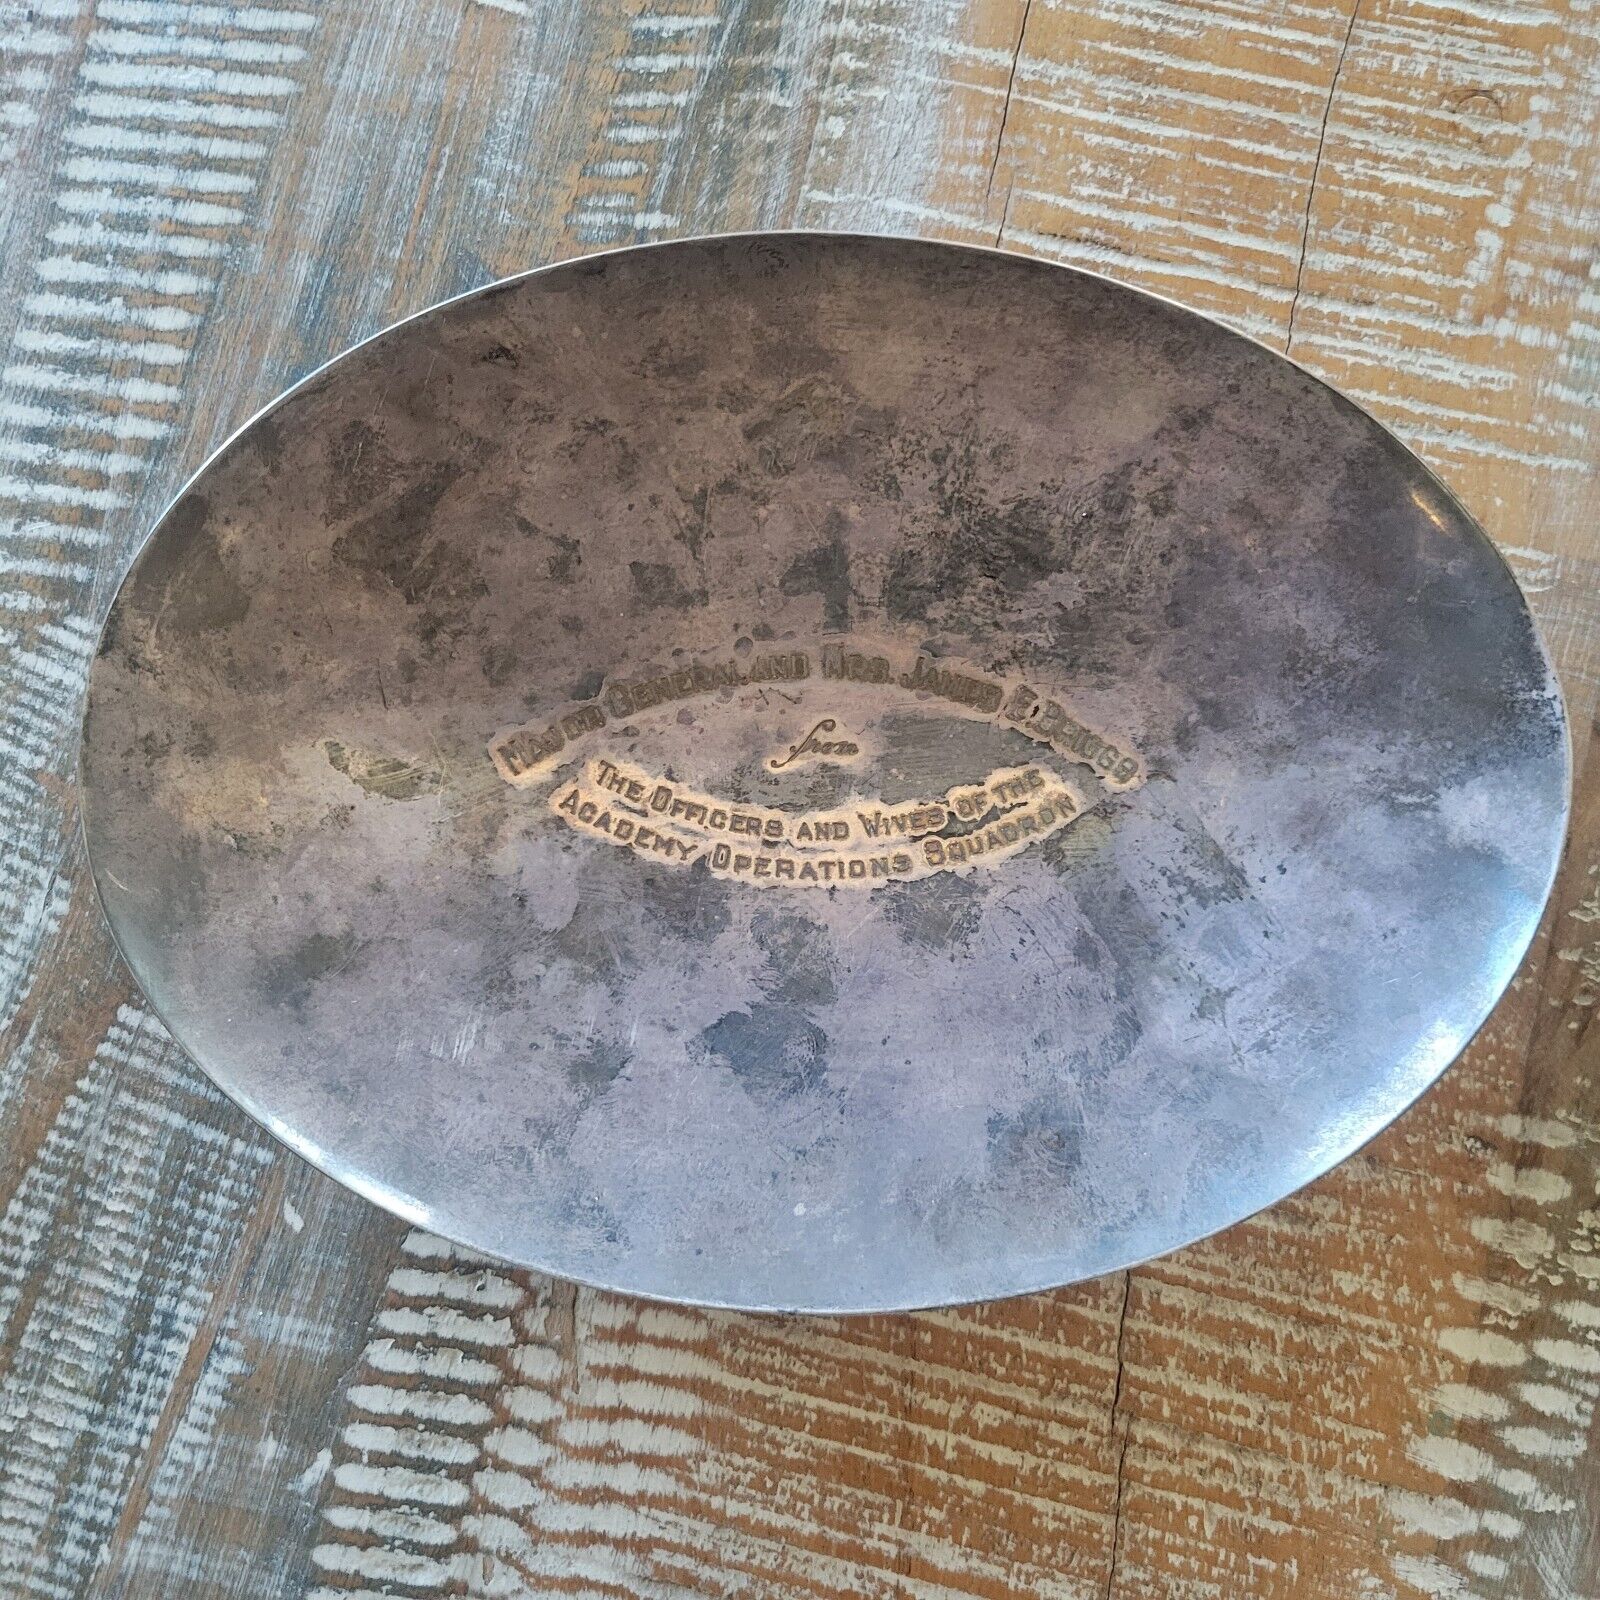 Vintage USAF General James E Briggs Pressenratipn Silver Plate Dish Engraved